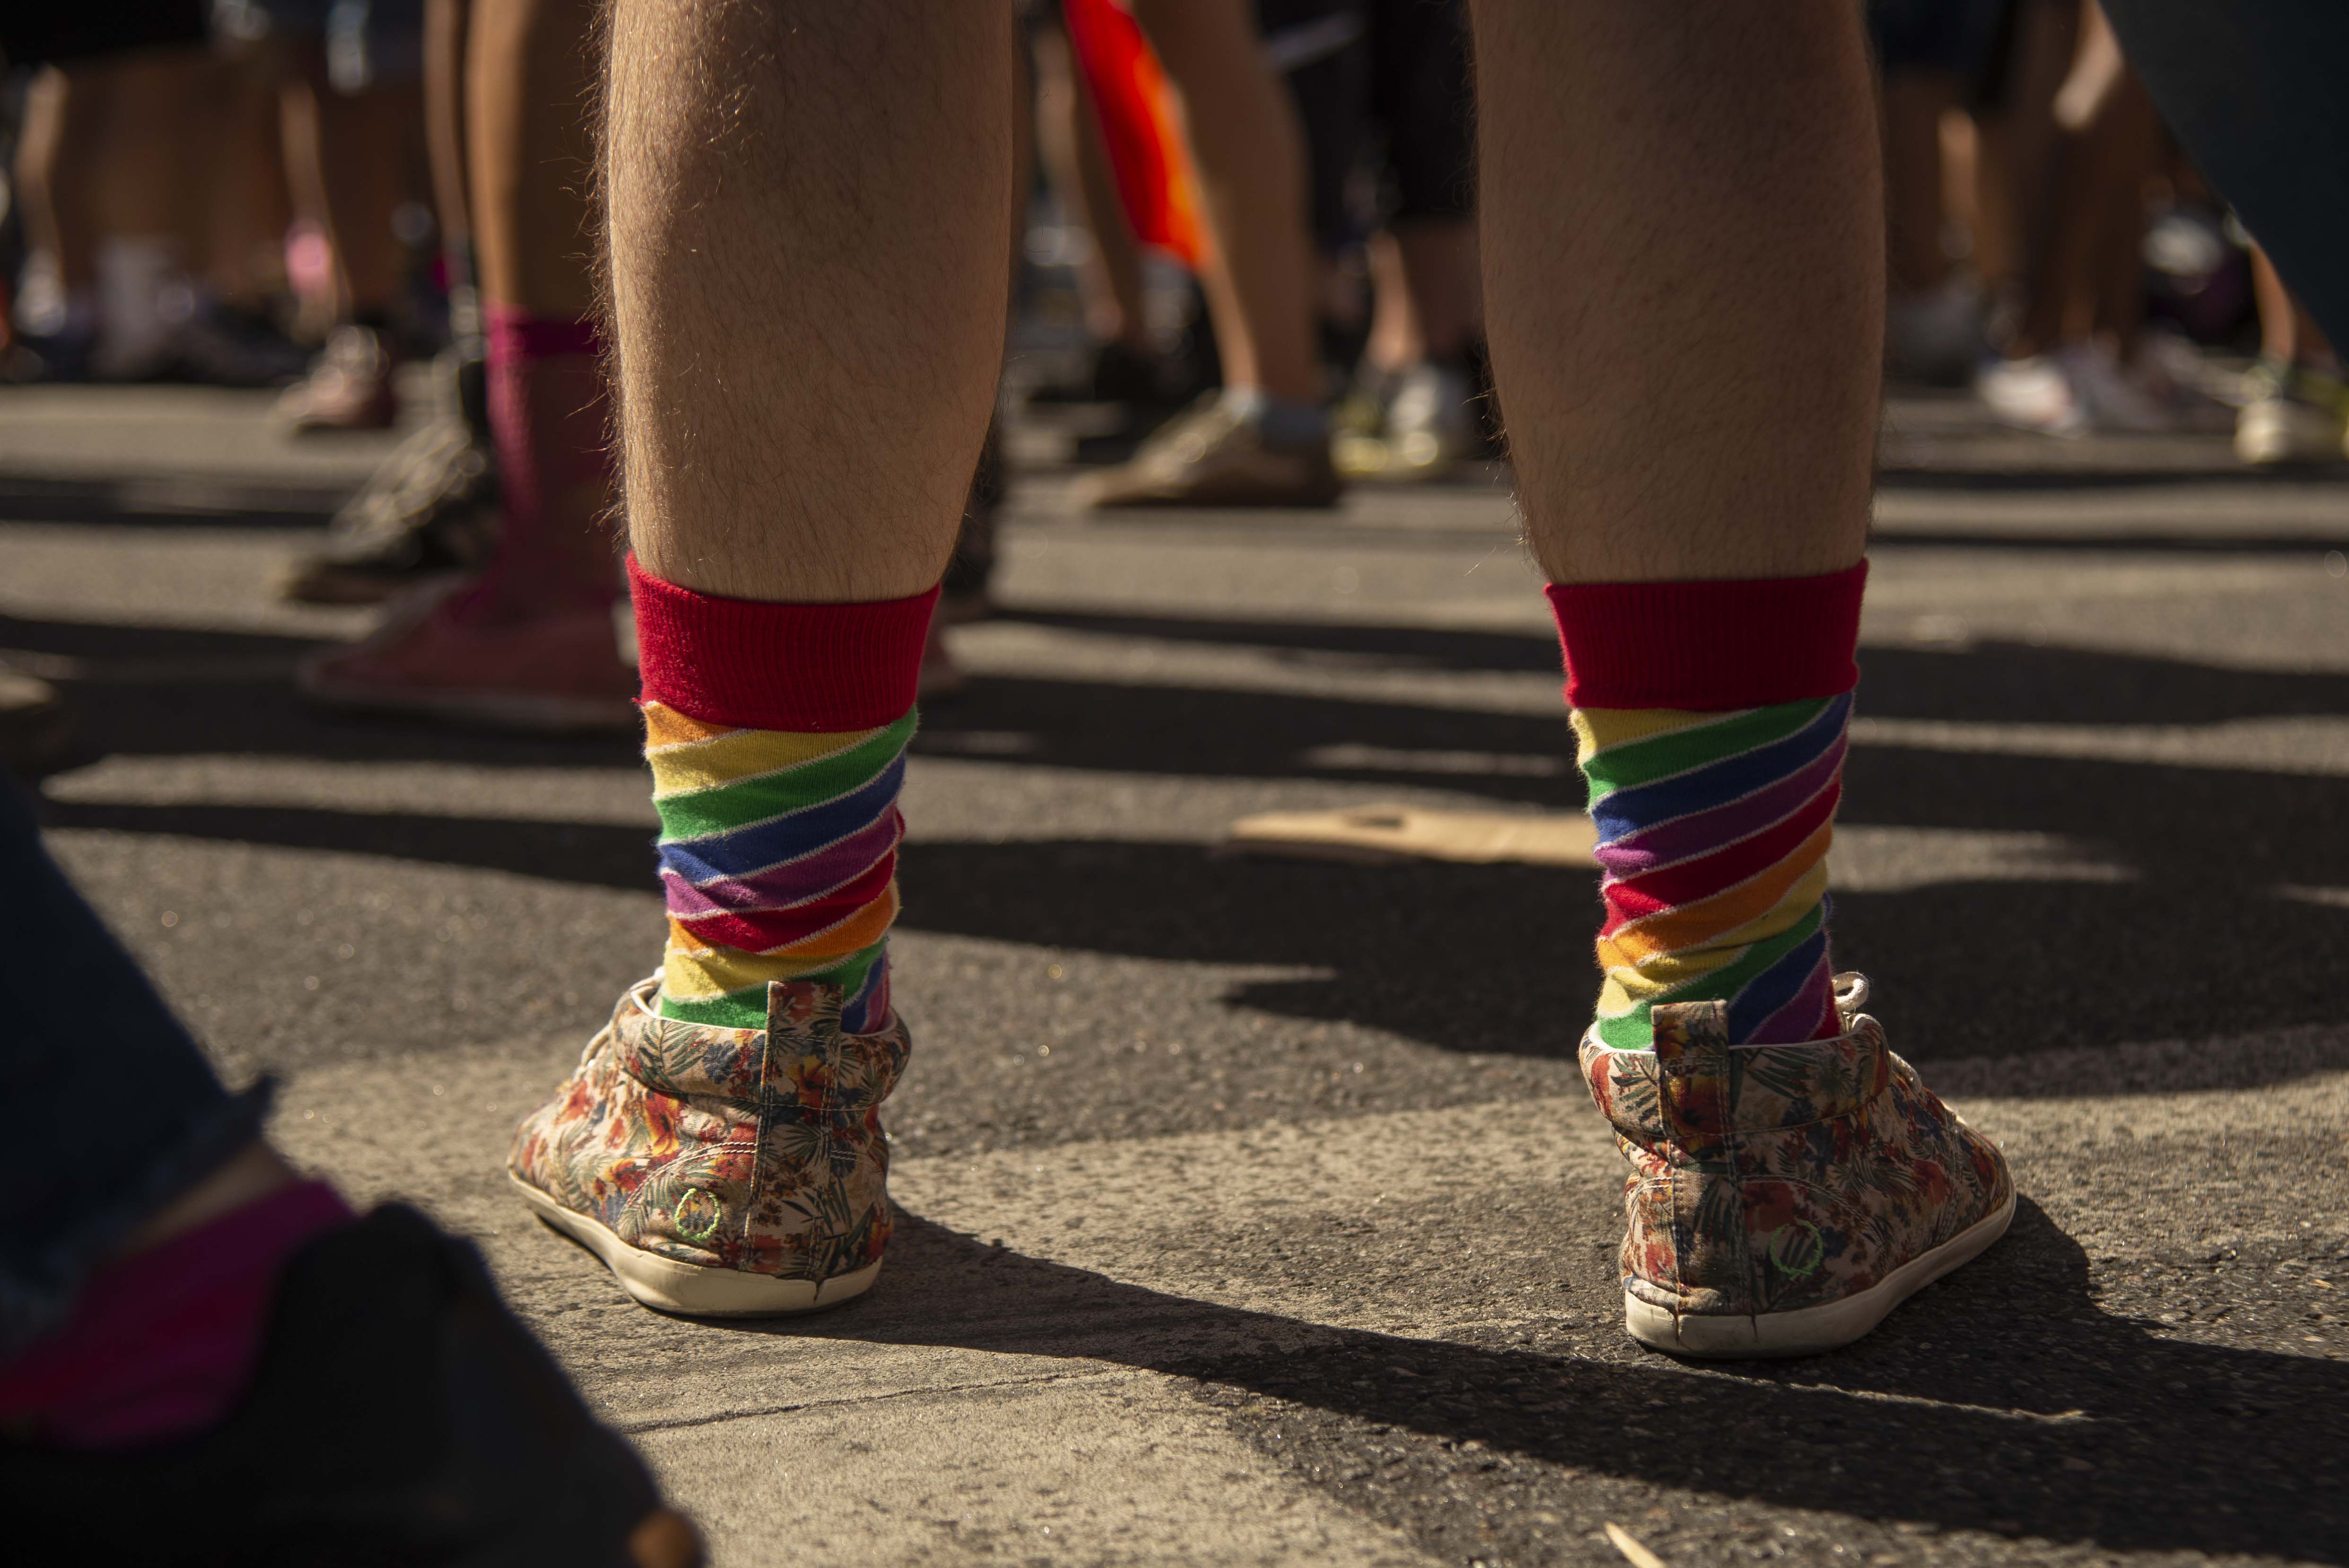 Las medias arcoíris fueron el accesorio más elegido para celebrar el orgullo con los coloridos outfits (Crédito: Cecilia Frenkel)